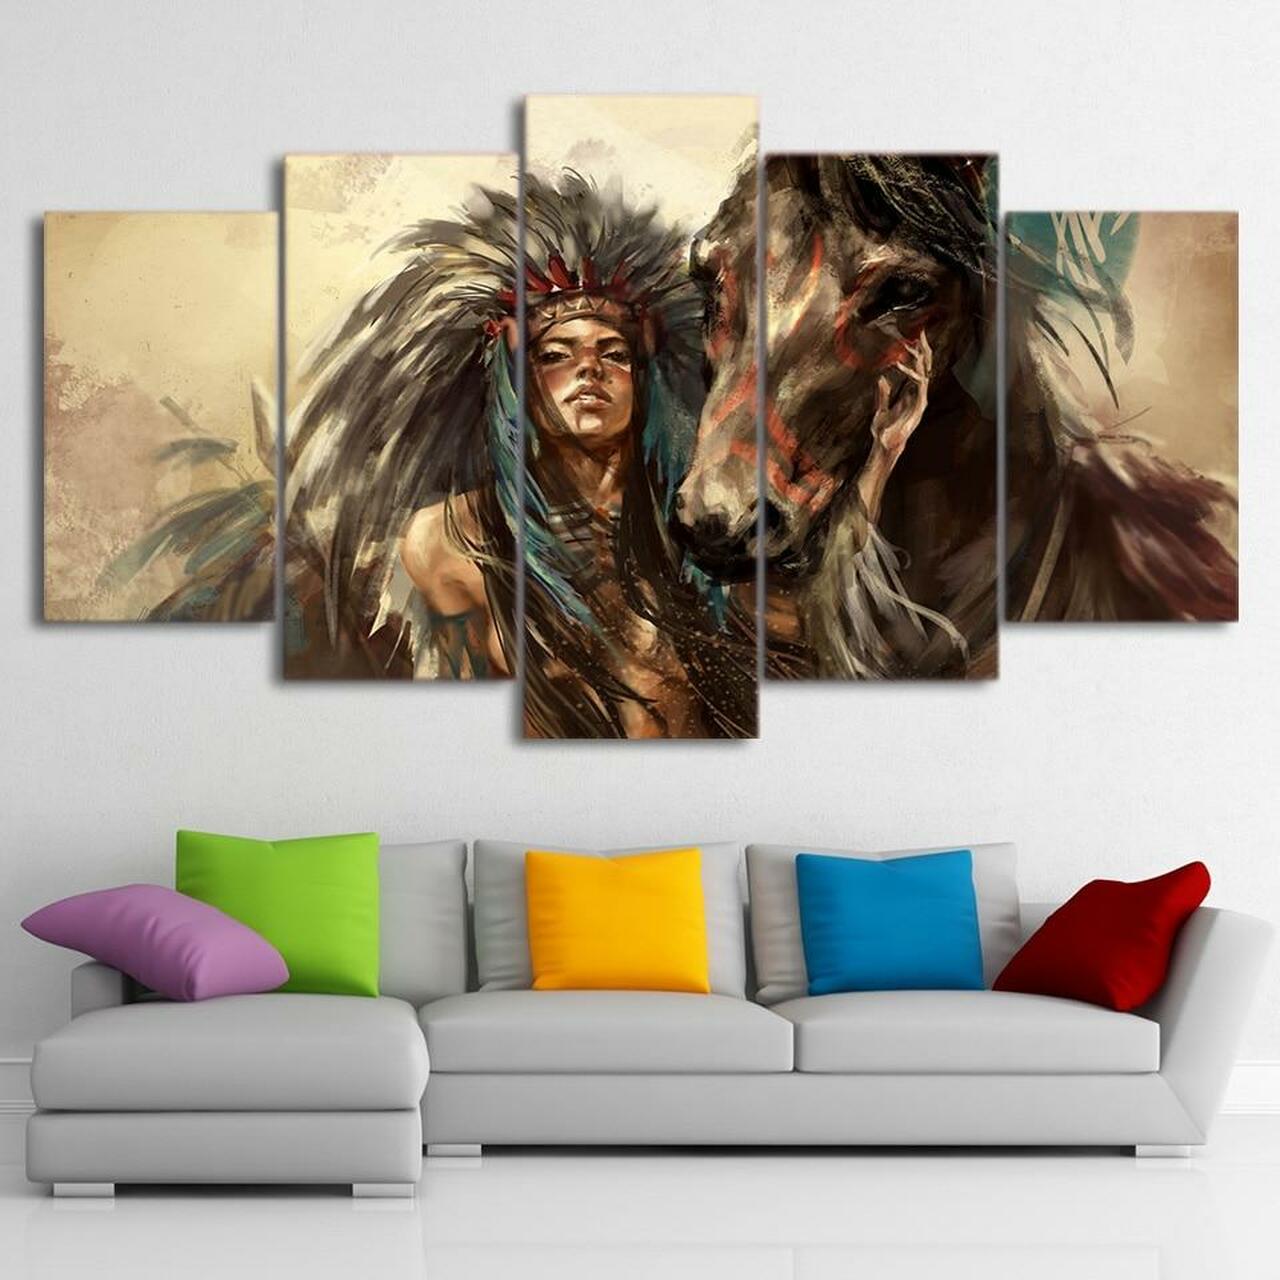 native american indian girl 5 pices peinture sur toile impression sur toile toile art pour la dcoration intrieureggk8m